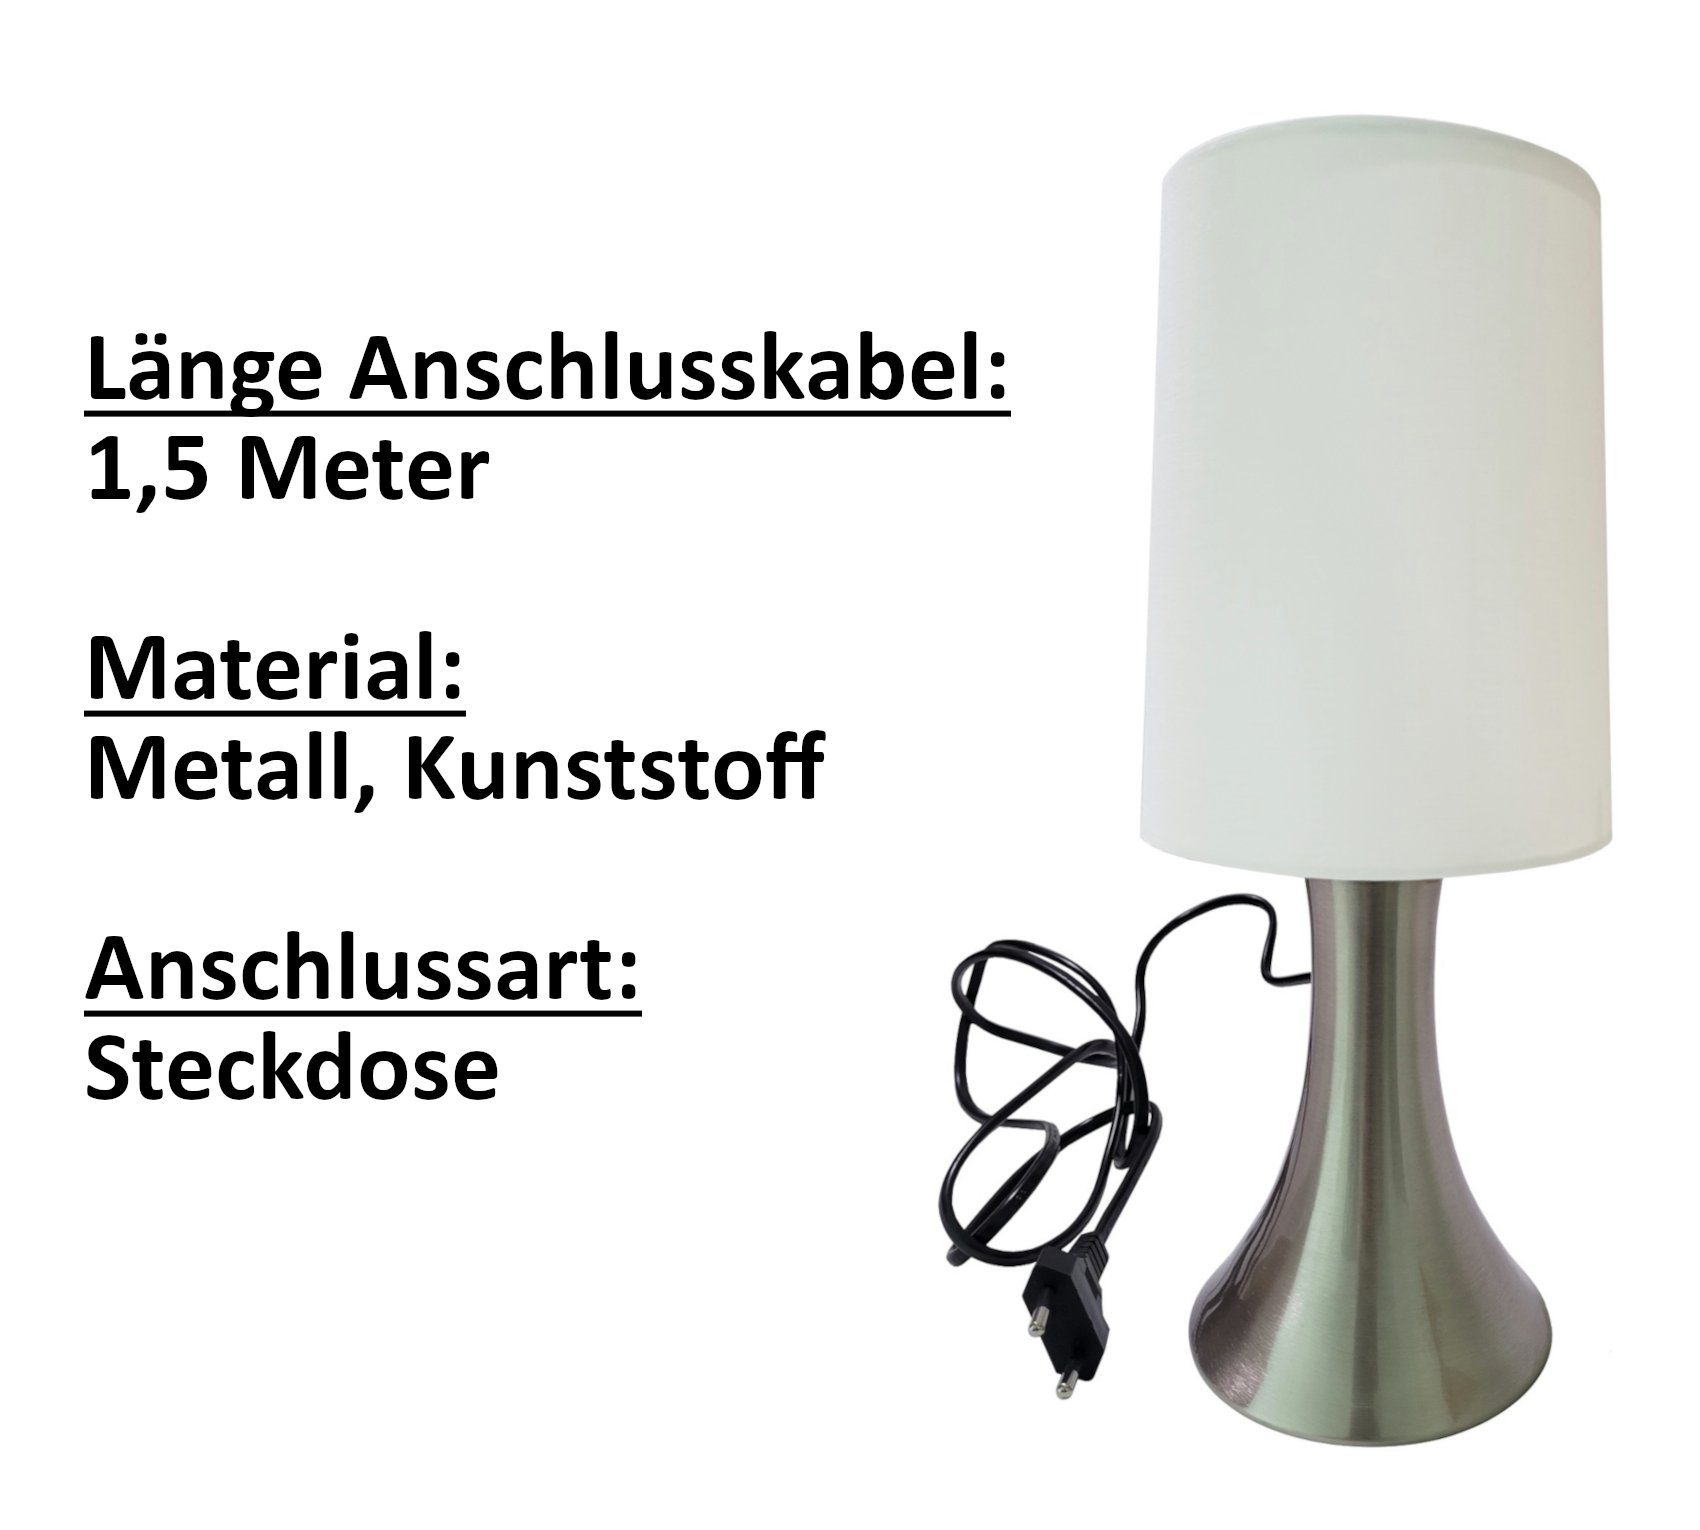 Provance Nachttischlampe Tischlampe mit Touch-Dimmer Weiß E14